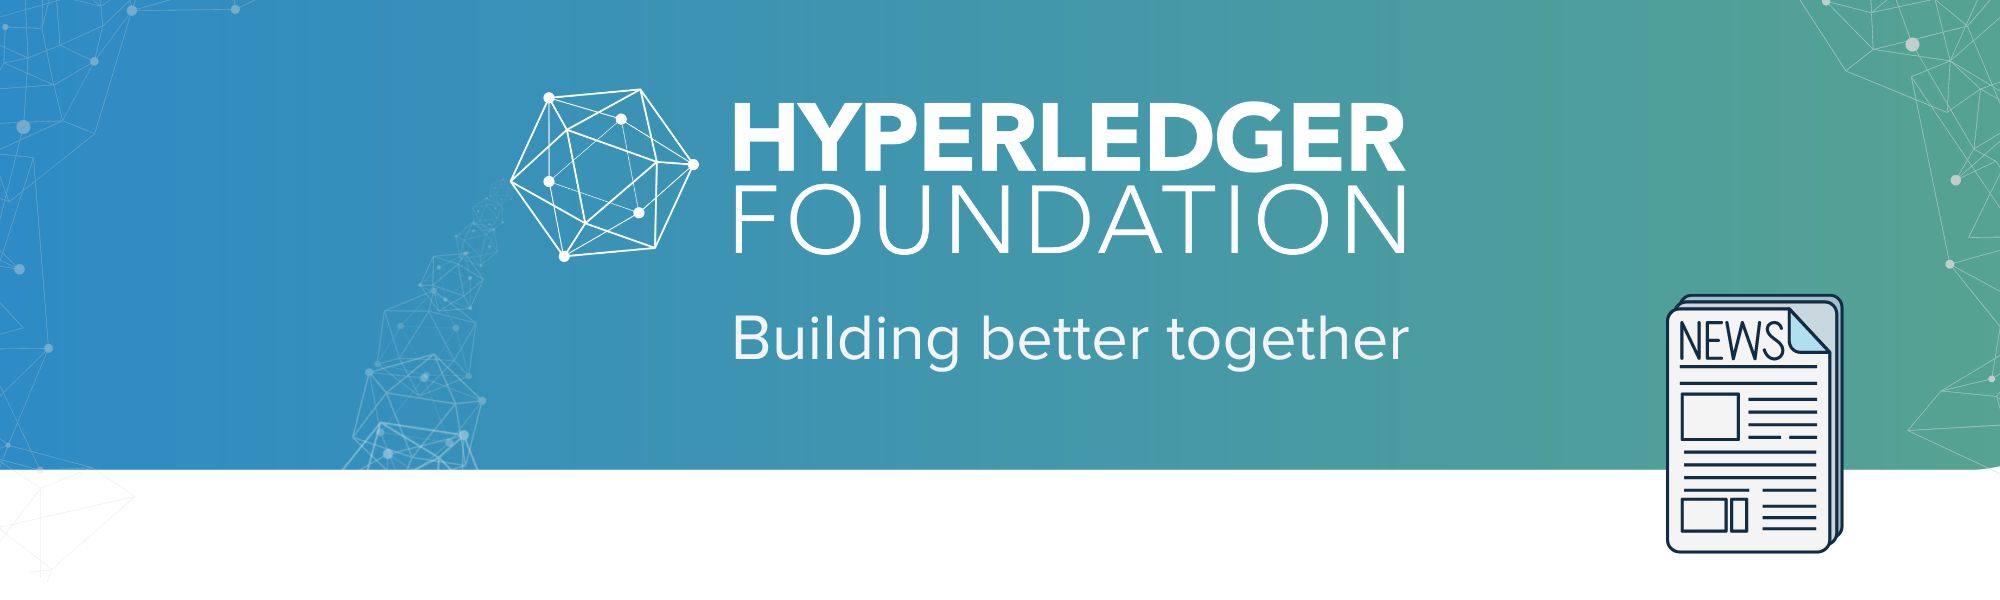 Hyperledger Newsletter Landing Page Header